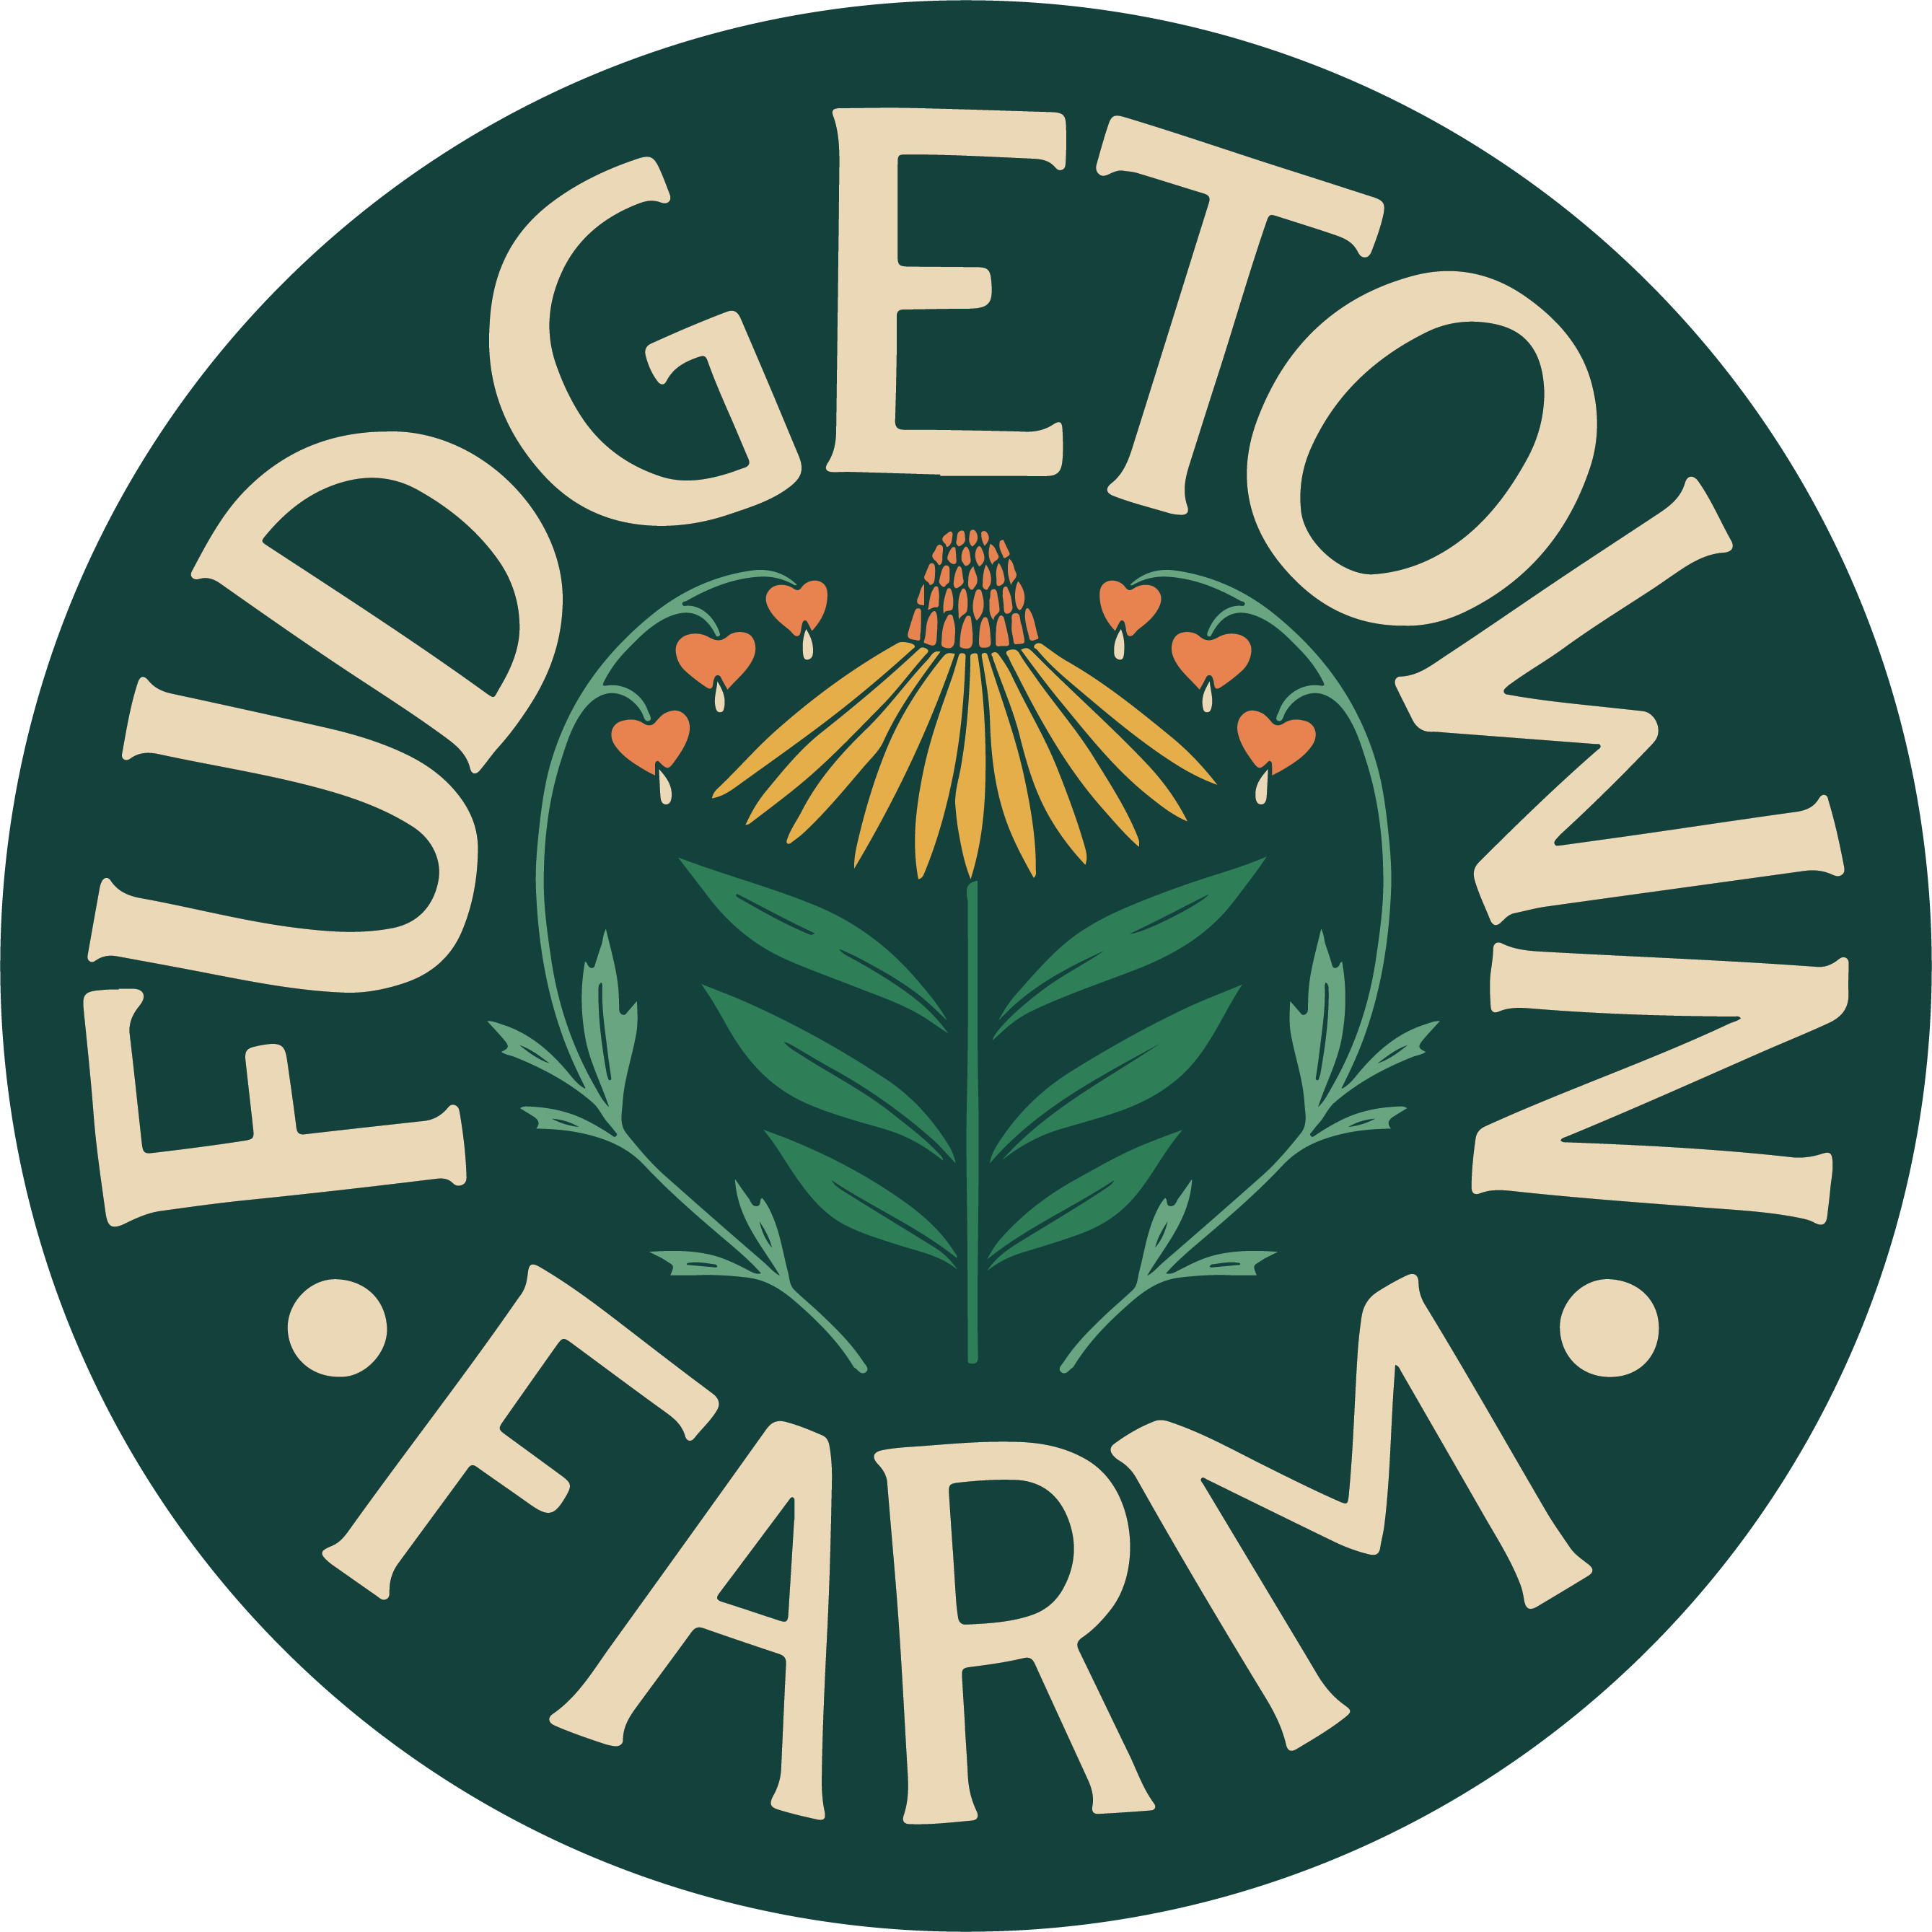 Fudgetown Farm